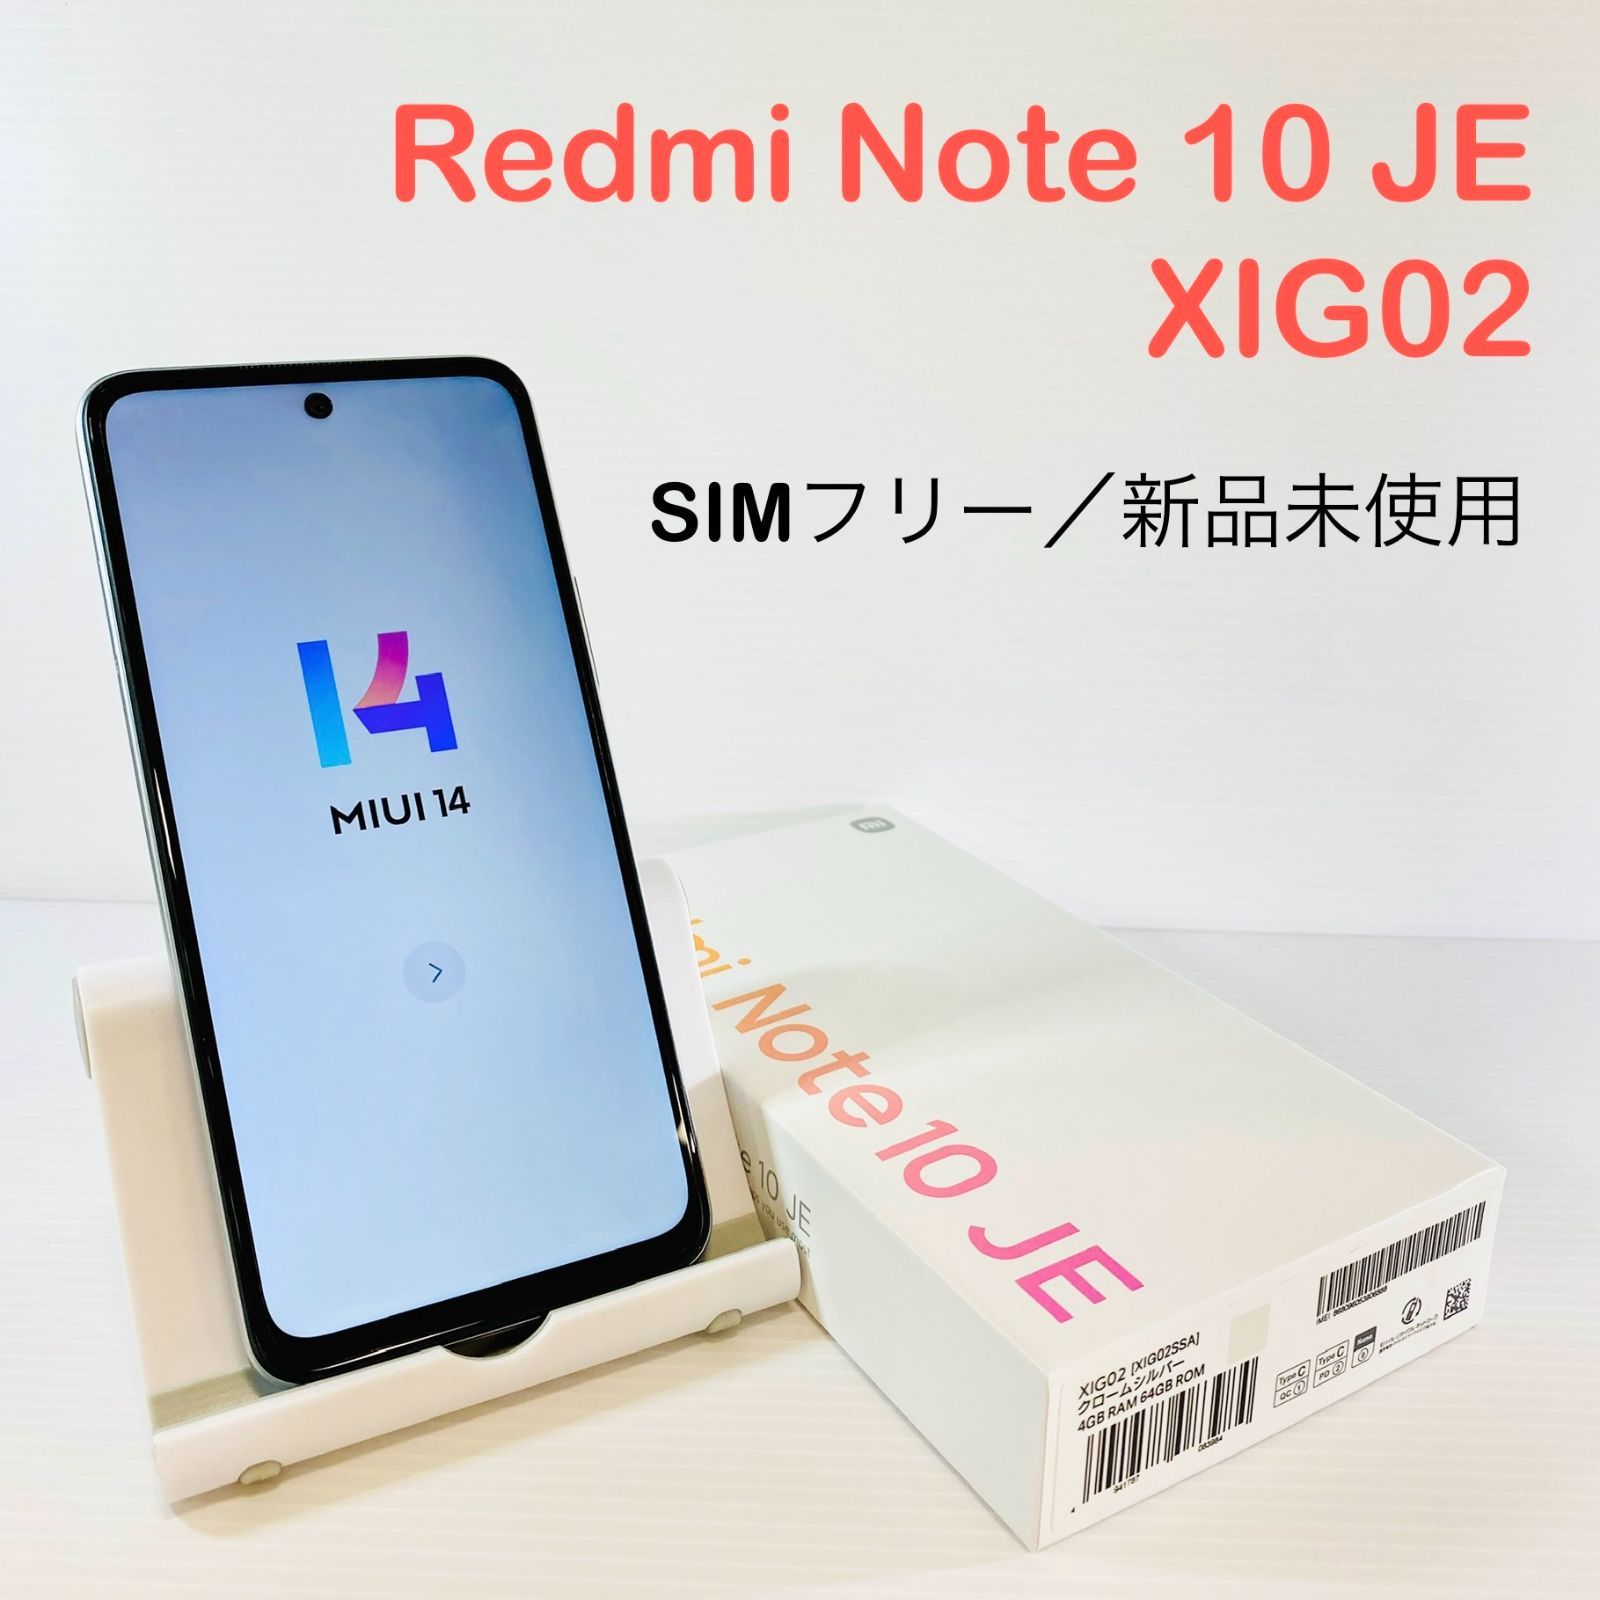 専門ショップ Redmi Note 10 JE クロームシルバー 64 GB SIMフリー